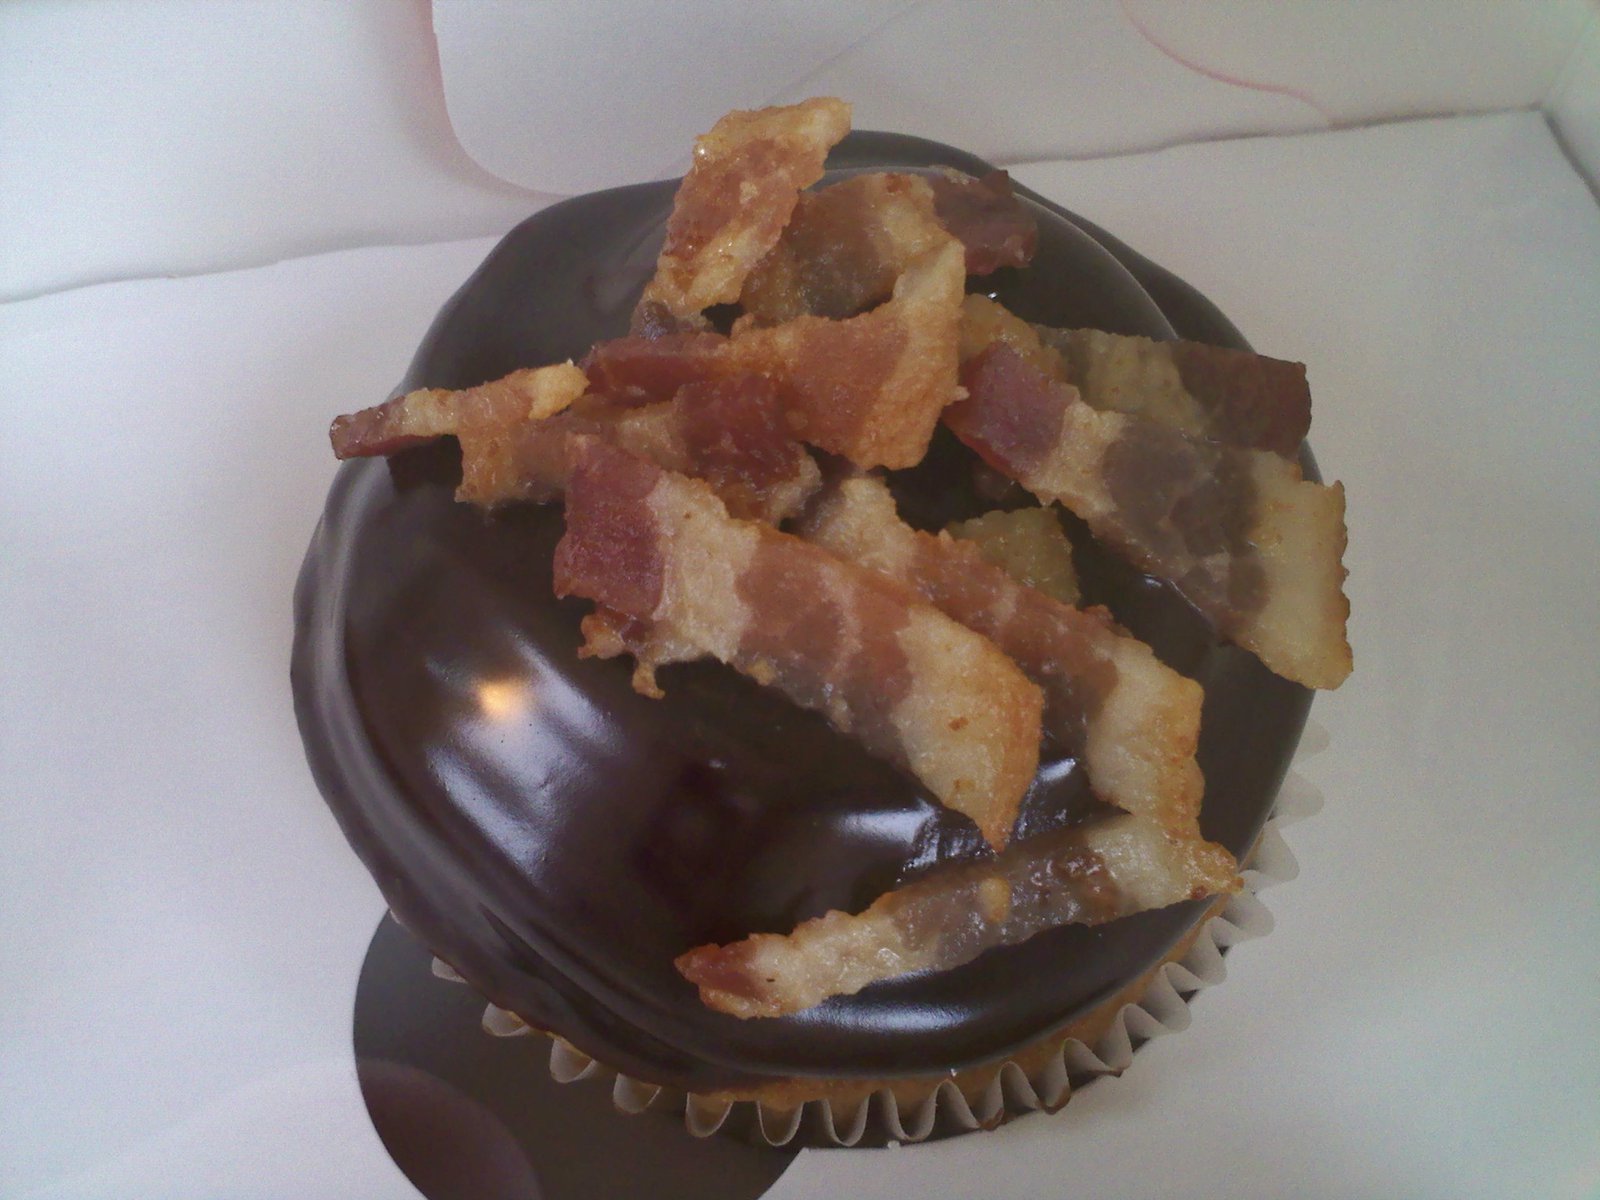 Bacon cupcake